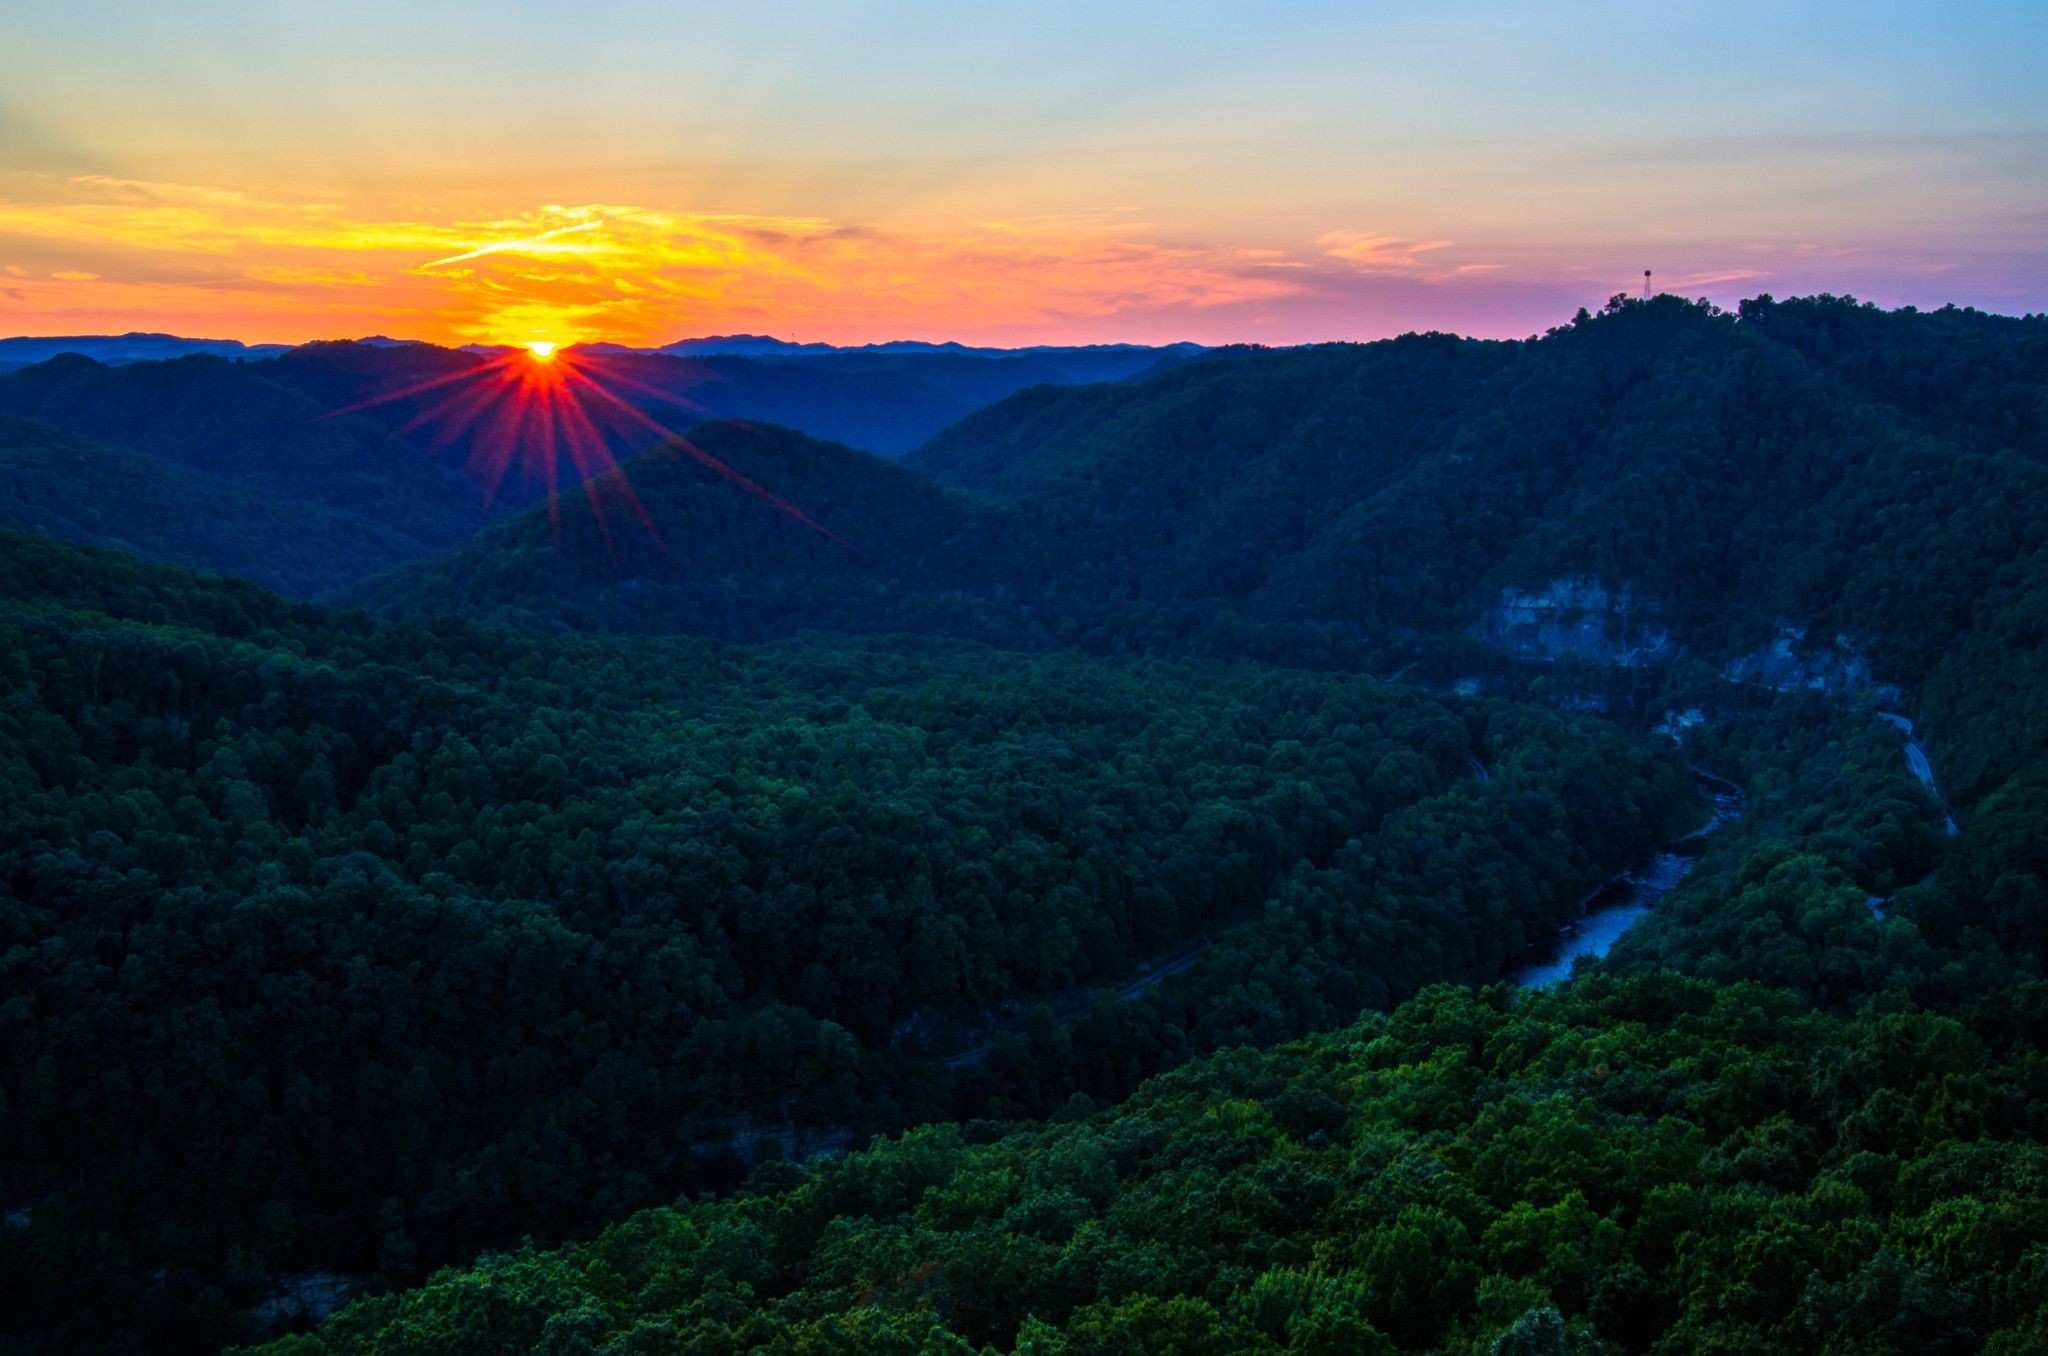 Los mejores lugares para disfrutar de un amanecer o atardecer en Virginia 